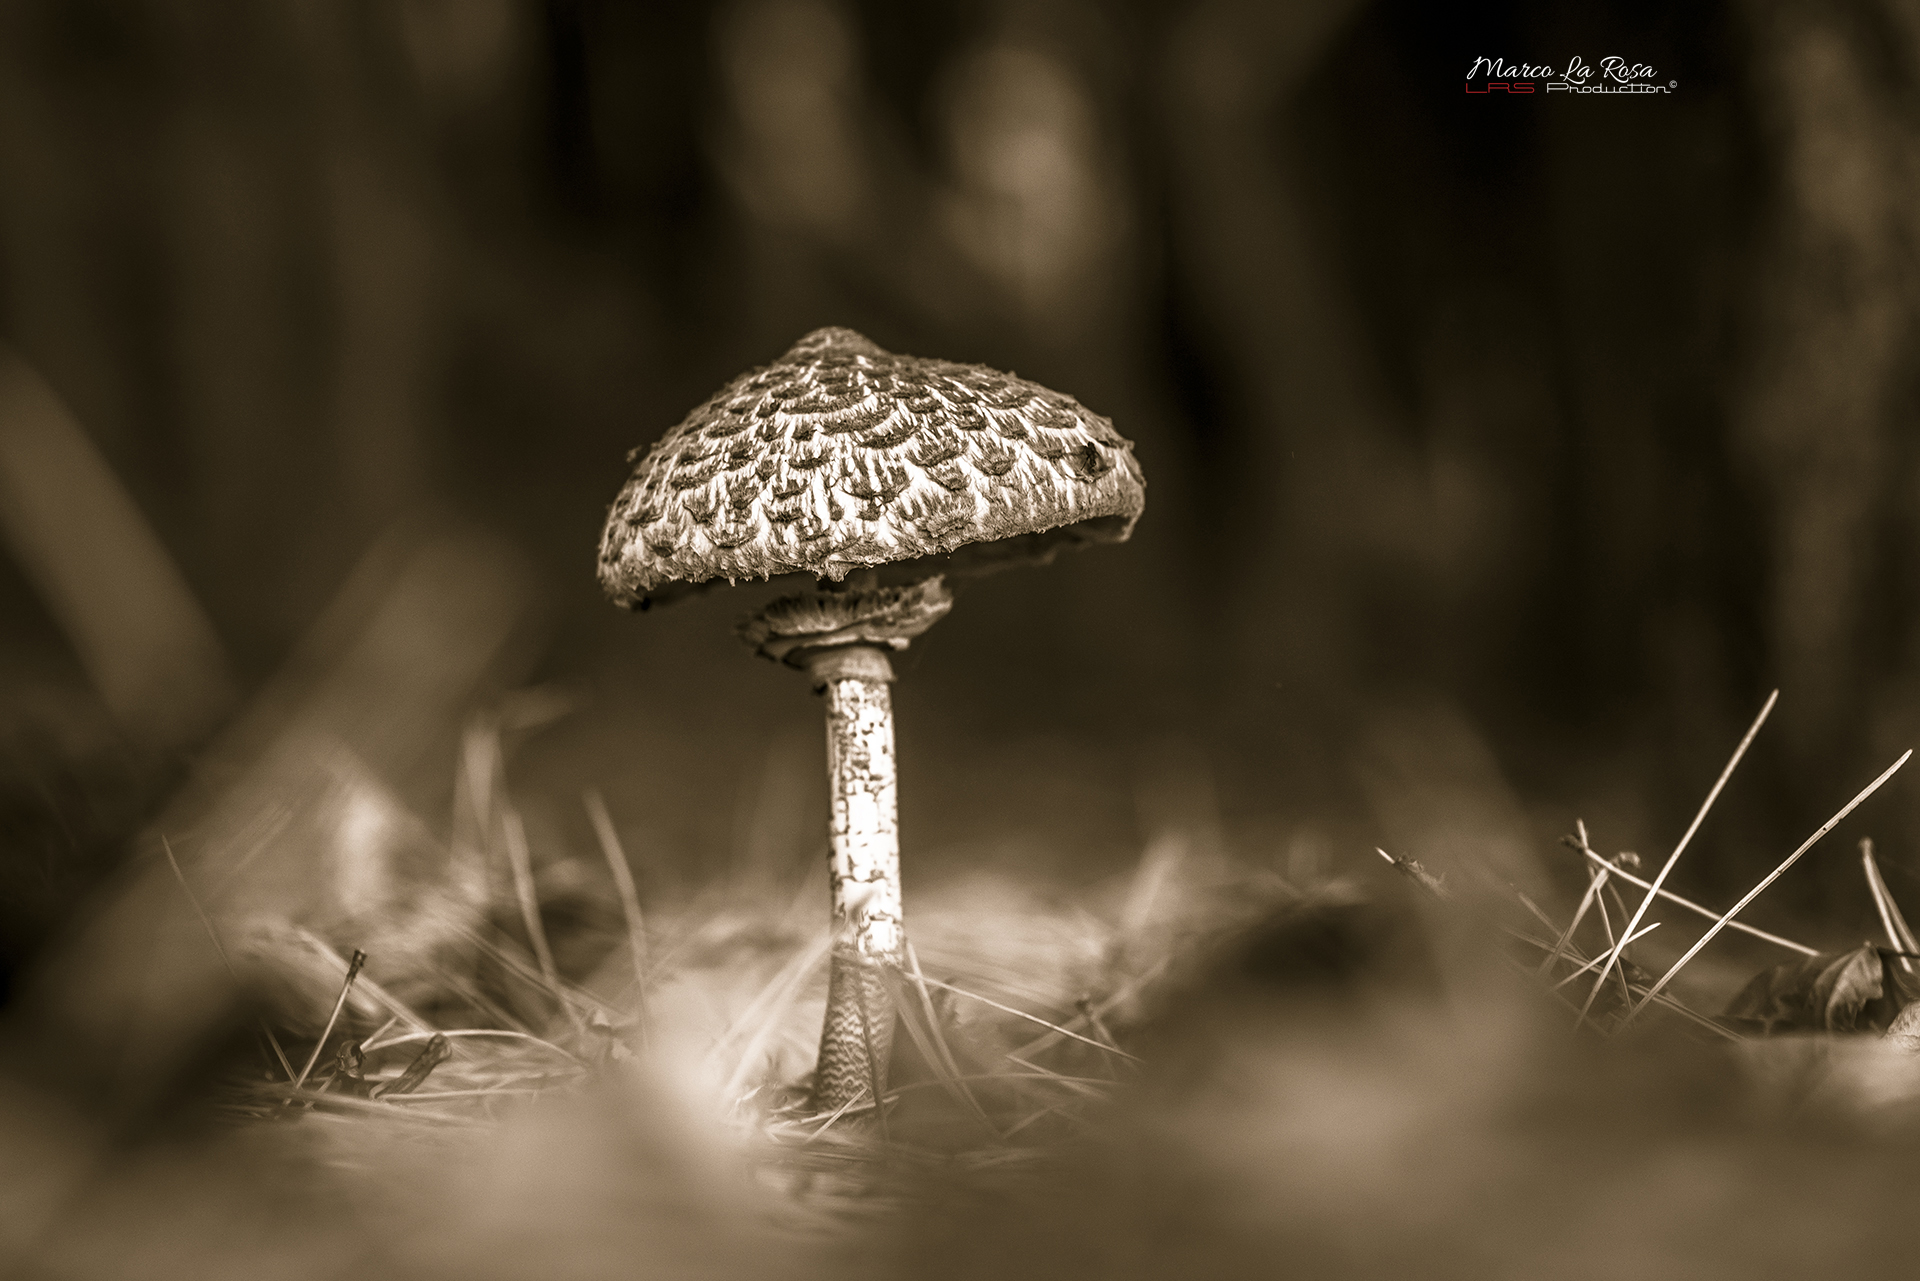 Parasol mushroom 2...